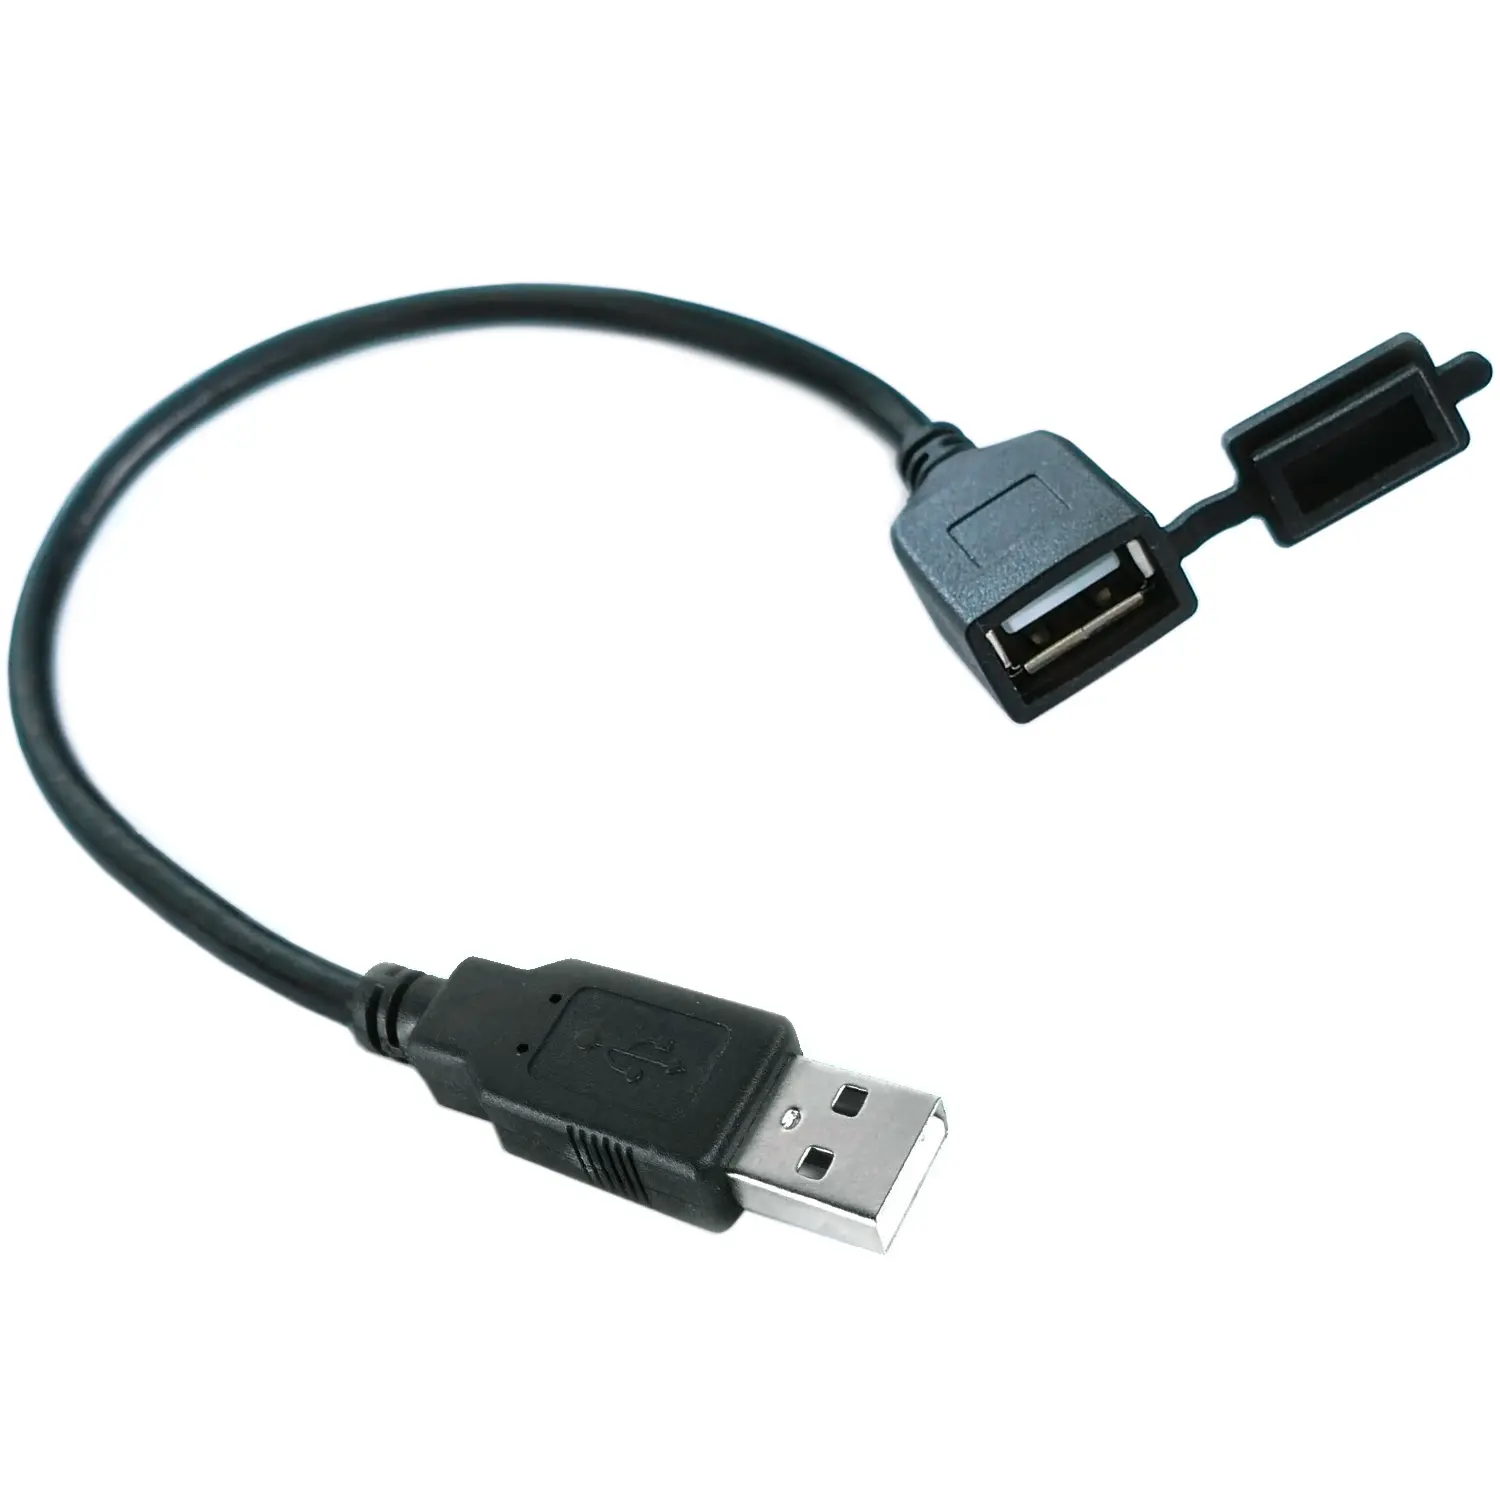 USB ตัวเมียพร้อมฝาปิด USB Type am ถึง AF IP67สายต่อ USB2.0กันฝุ่นสำหรับ POS ATM kios IPC SBC แขนพีซี